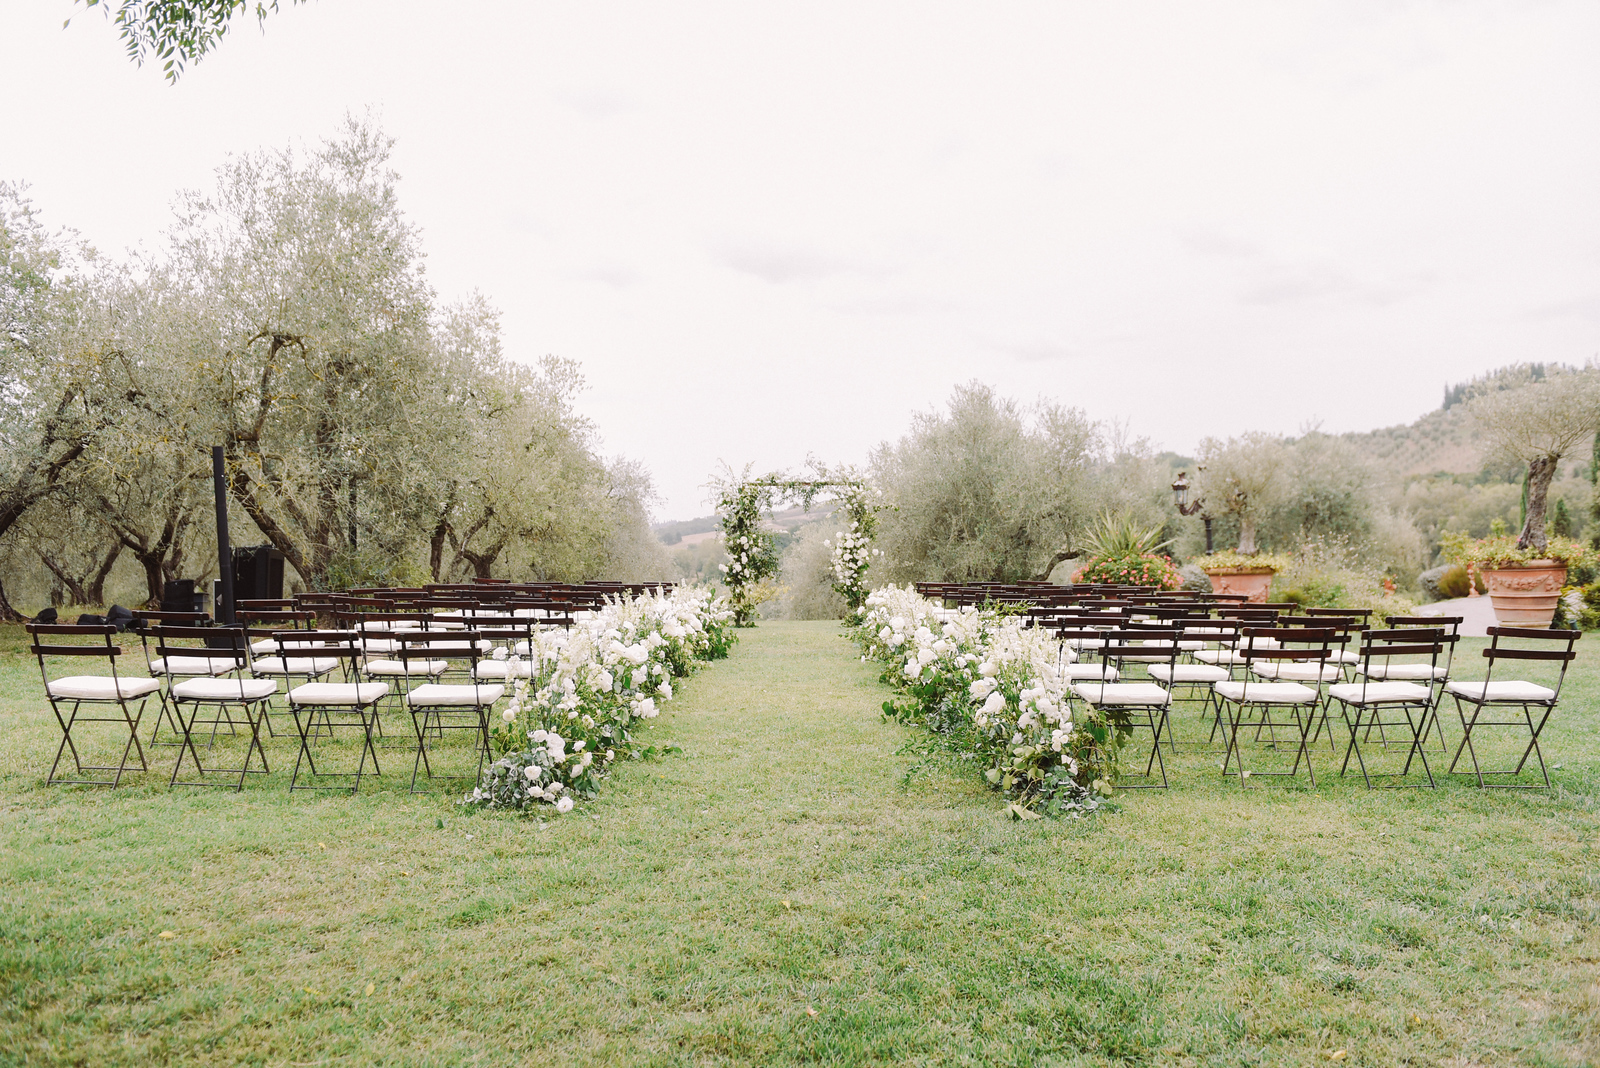 Decoração clean com flores brancas para cerimônia de casamento ao ar livre | Foto: Land Photography